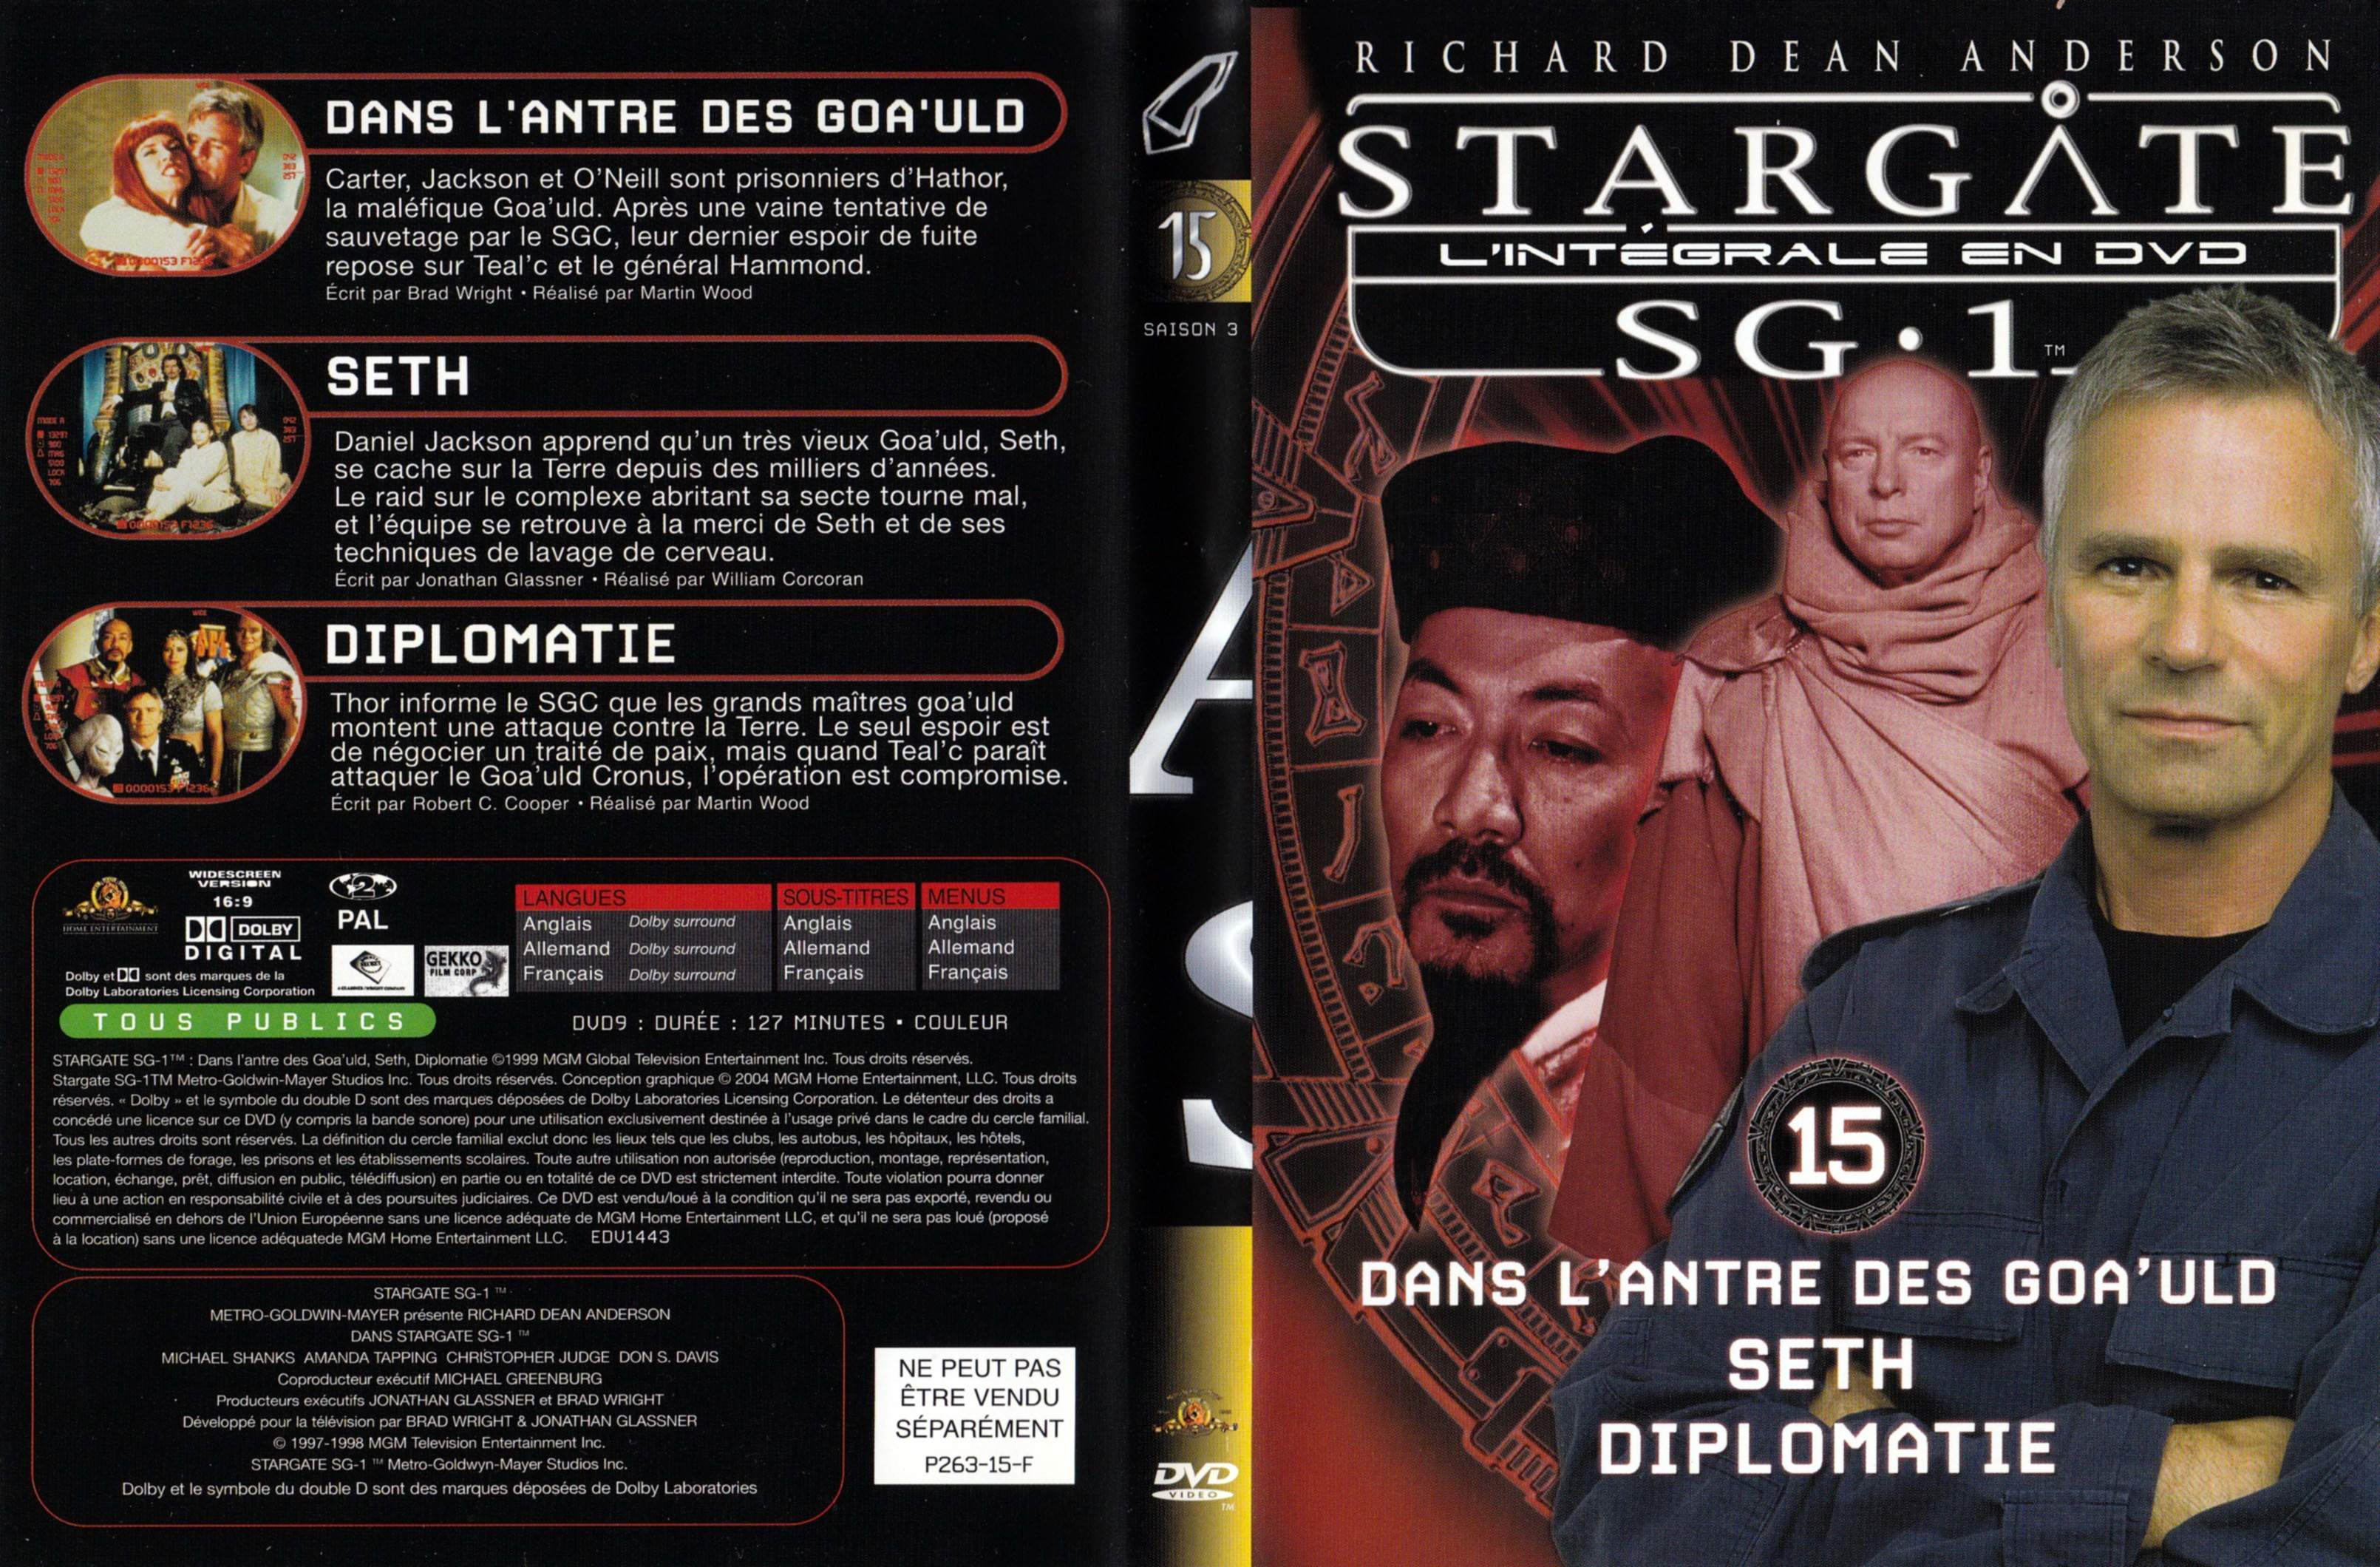 Jaquette DVD Stargate SG1 Intgrale Saison 3 vol 15